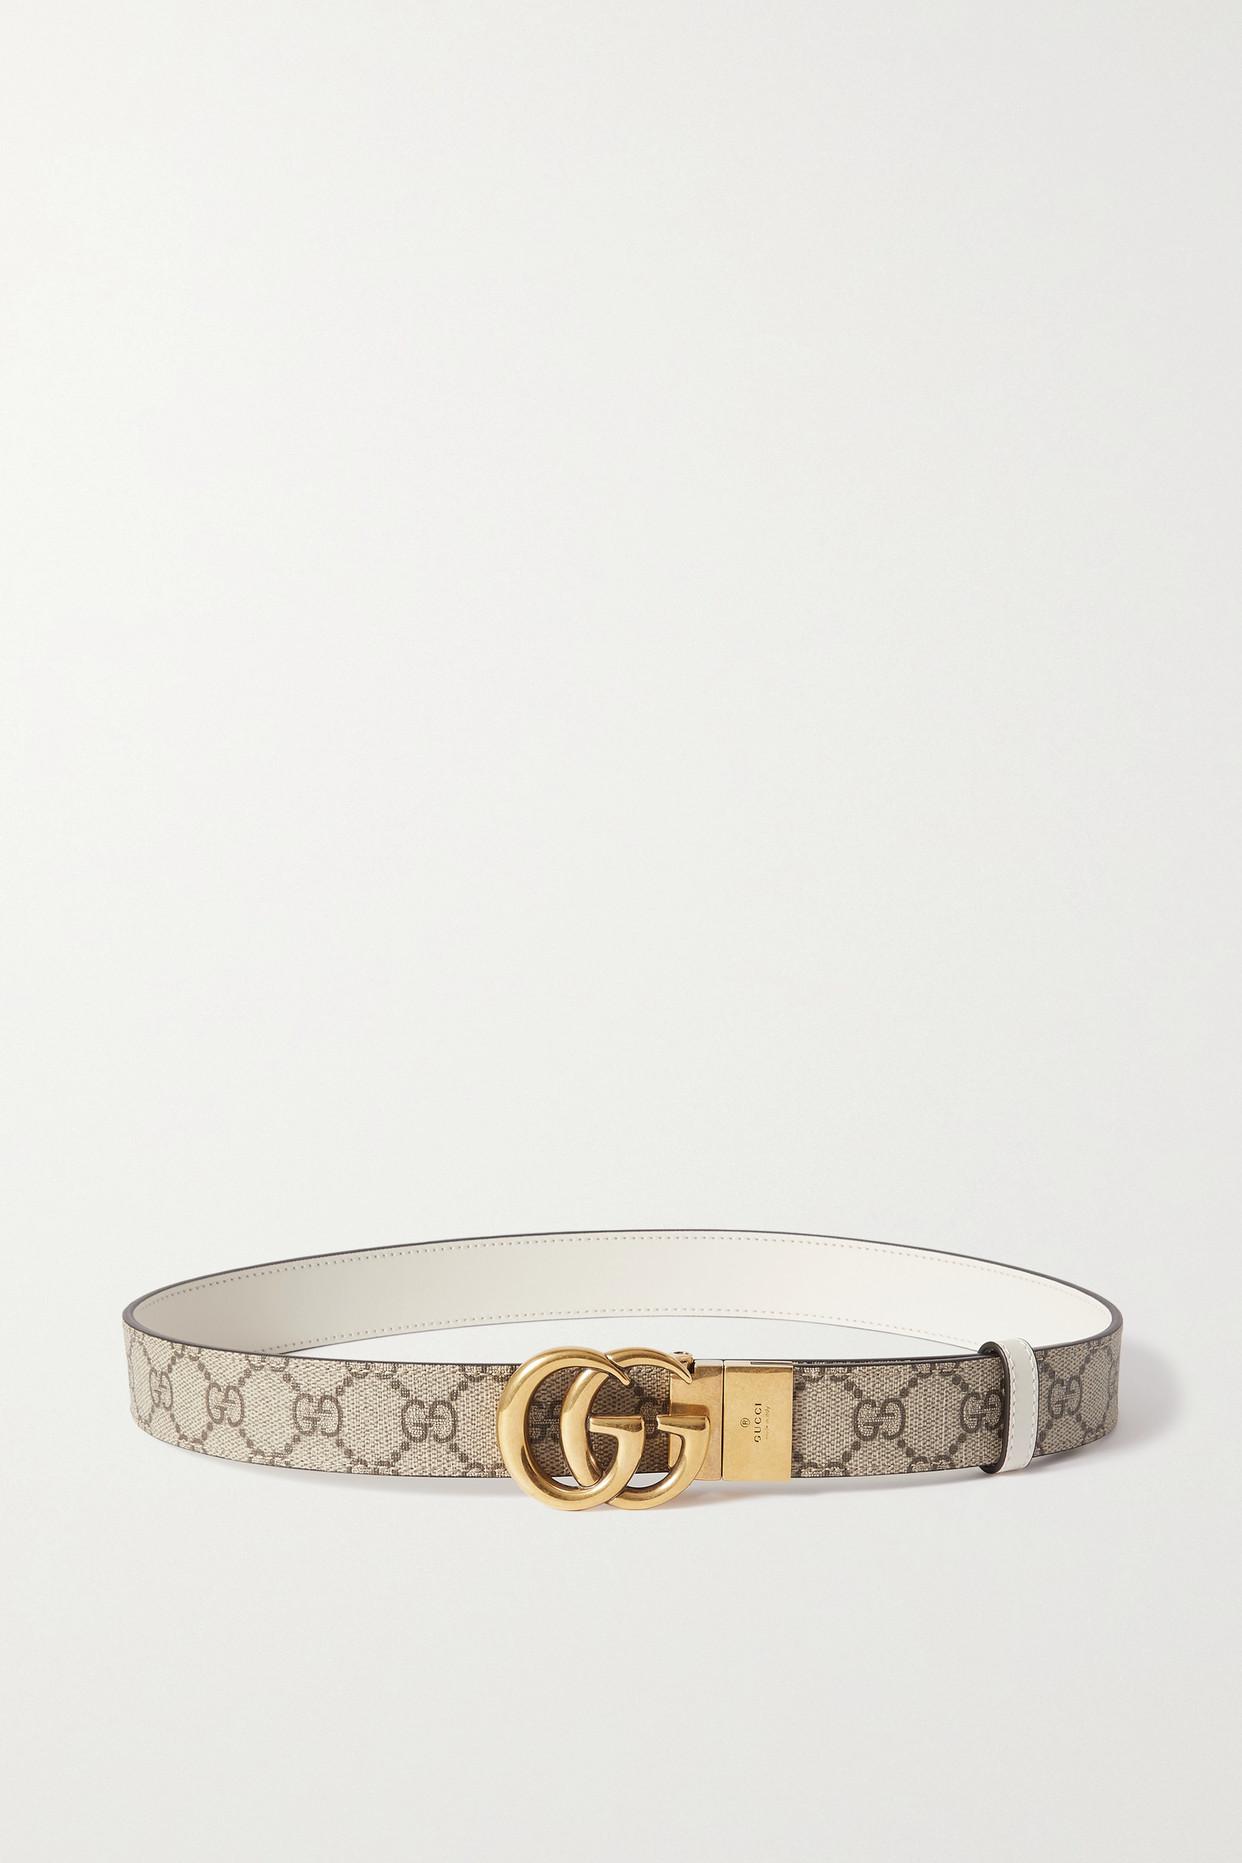 Gucci - Textured Leather Waist Belt - Black - 65 - Net A Porter